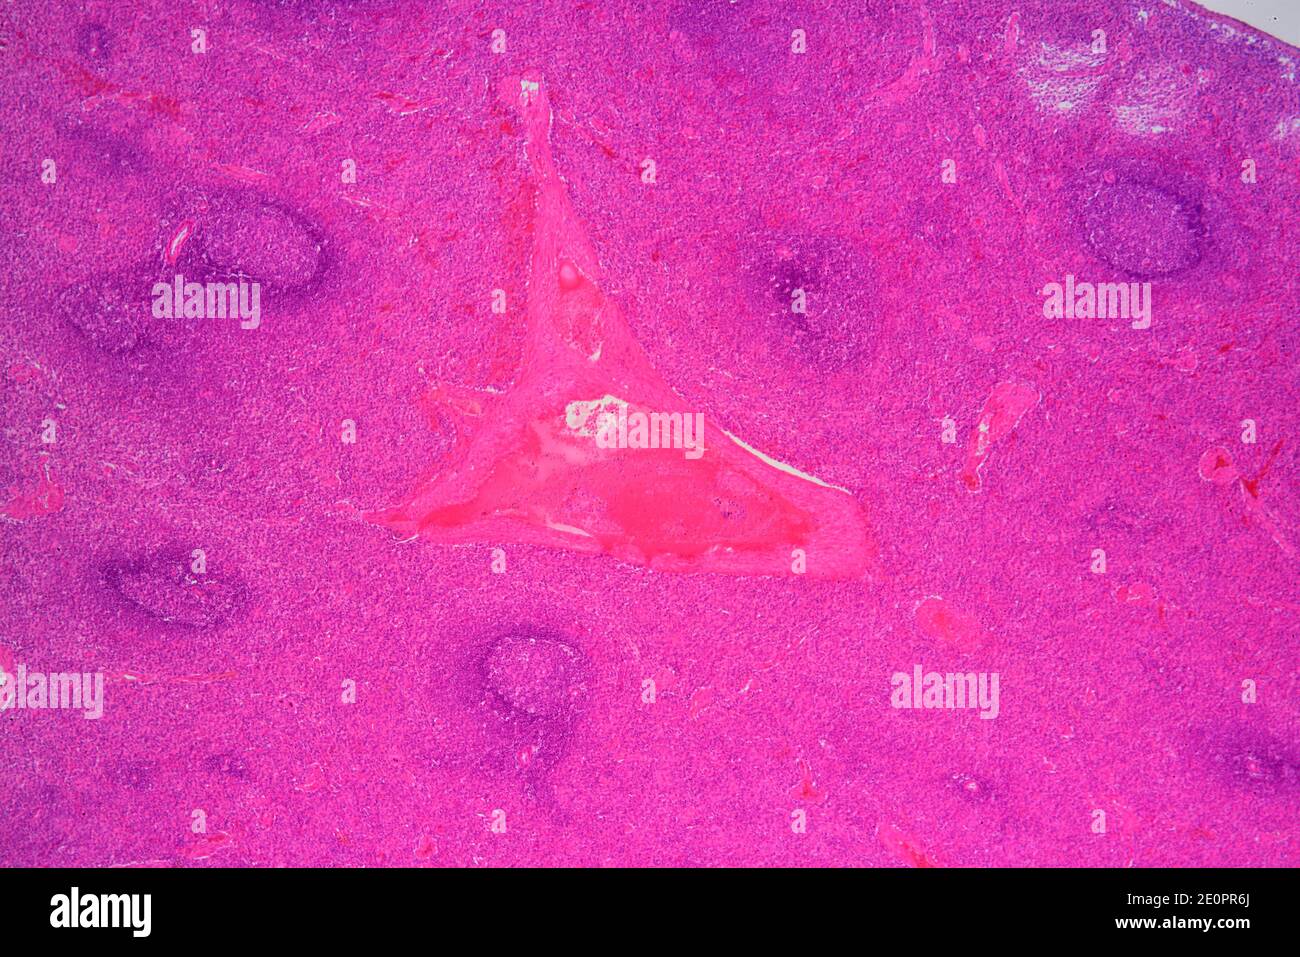 Bazo humano (órgano linfático) que muestra cápsulas, pulpa roja, pulpa blanca y vaso sanguíneo. X25 a 10 cm de ancho. Foto de stock